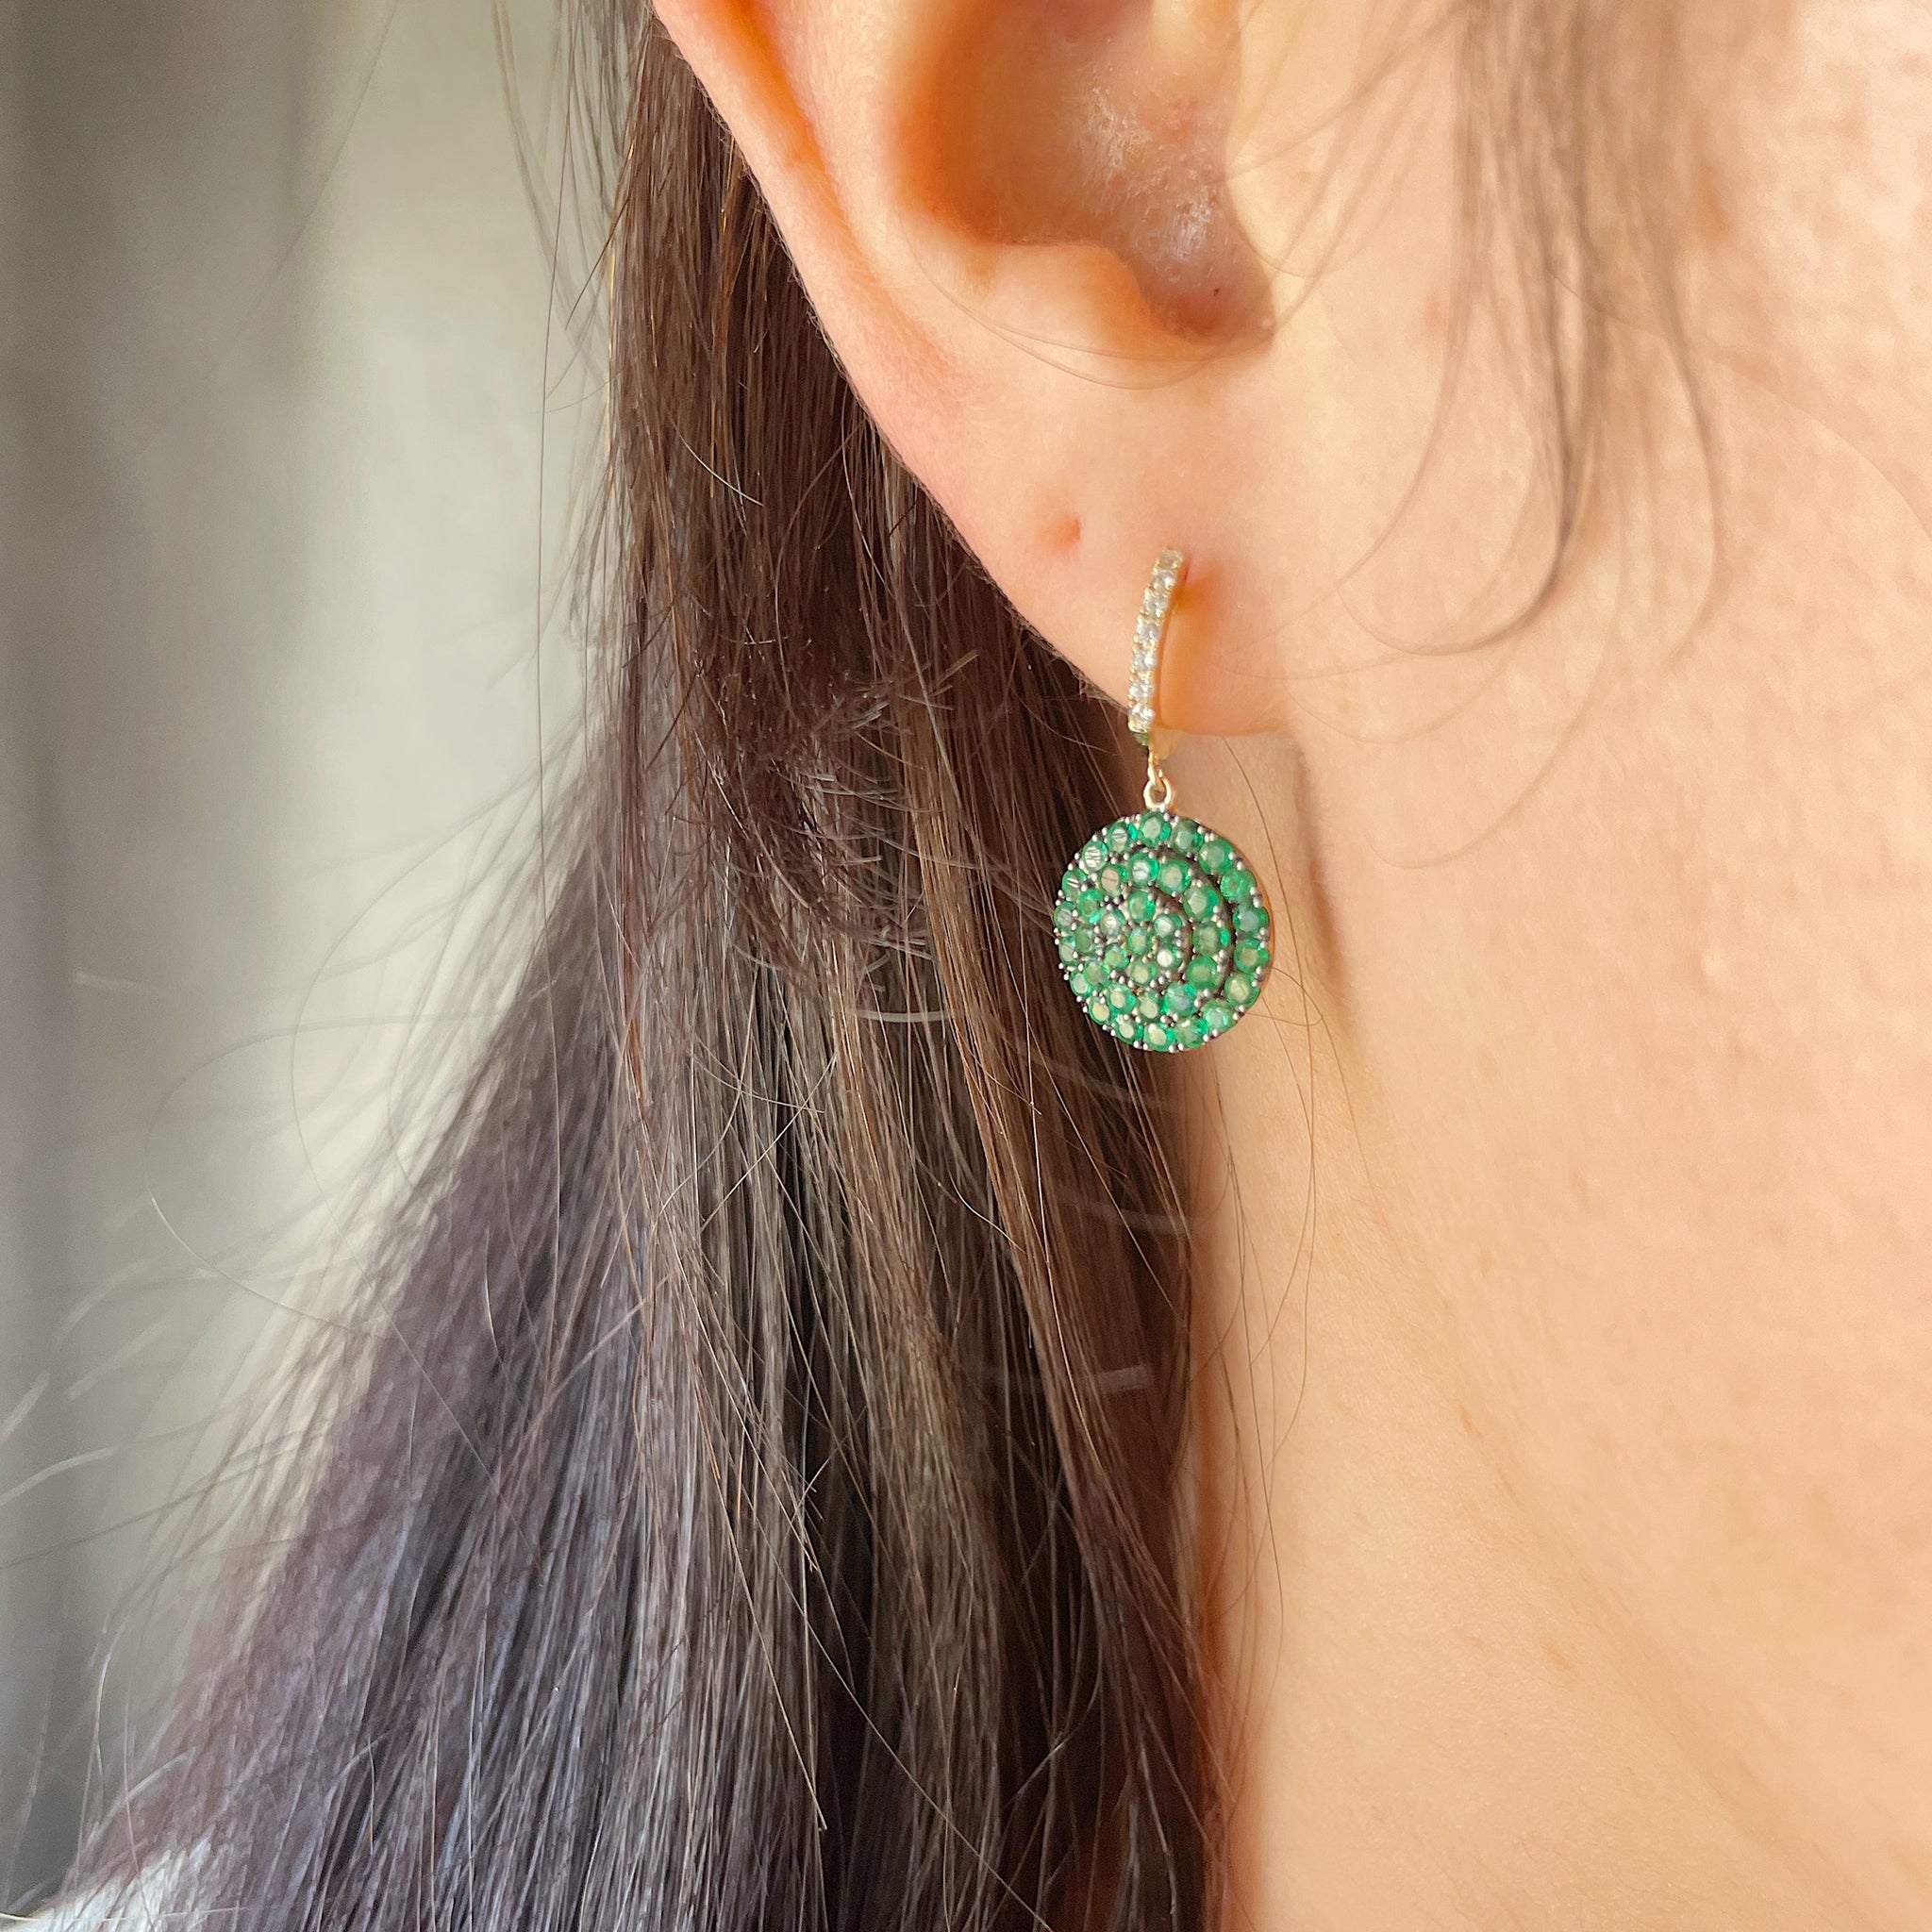 Pavé Diamond & Emerald 14K Gold Drop Earrings